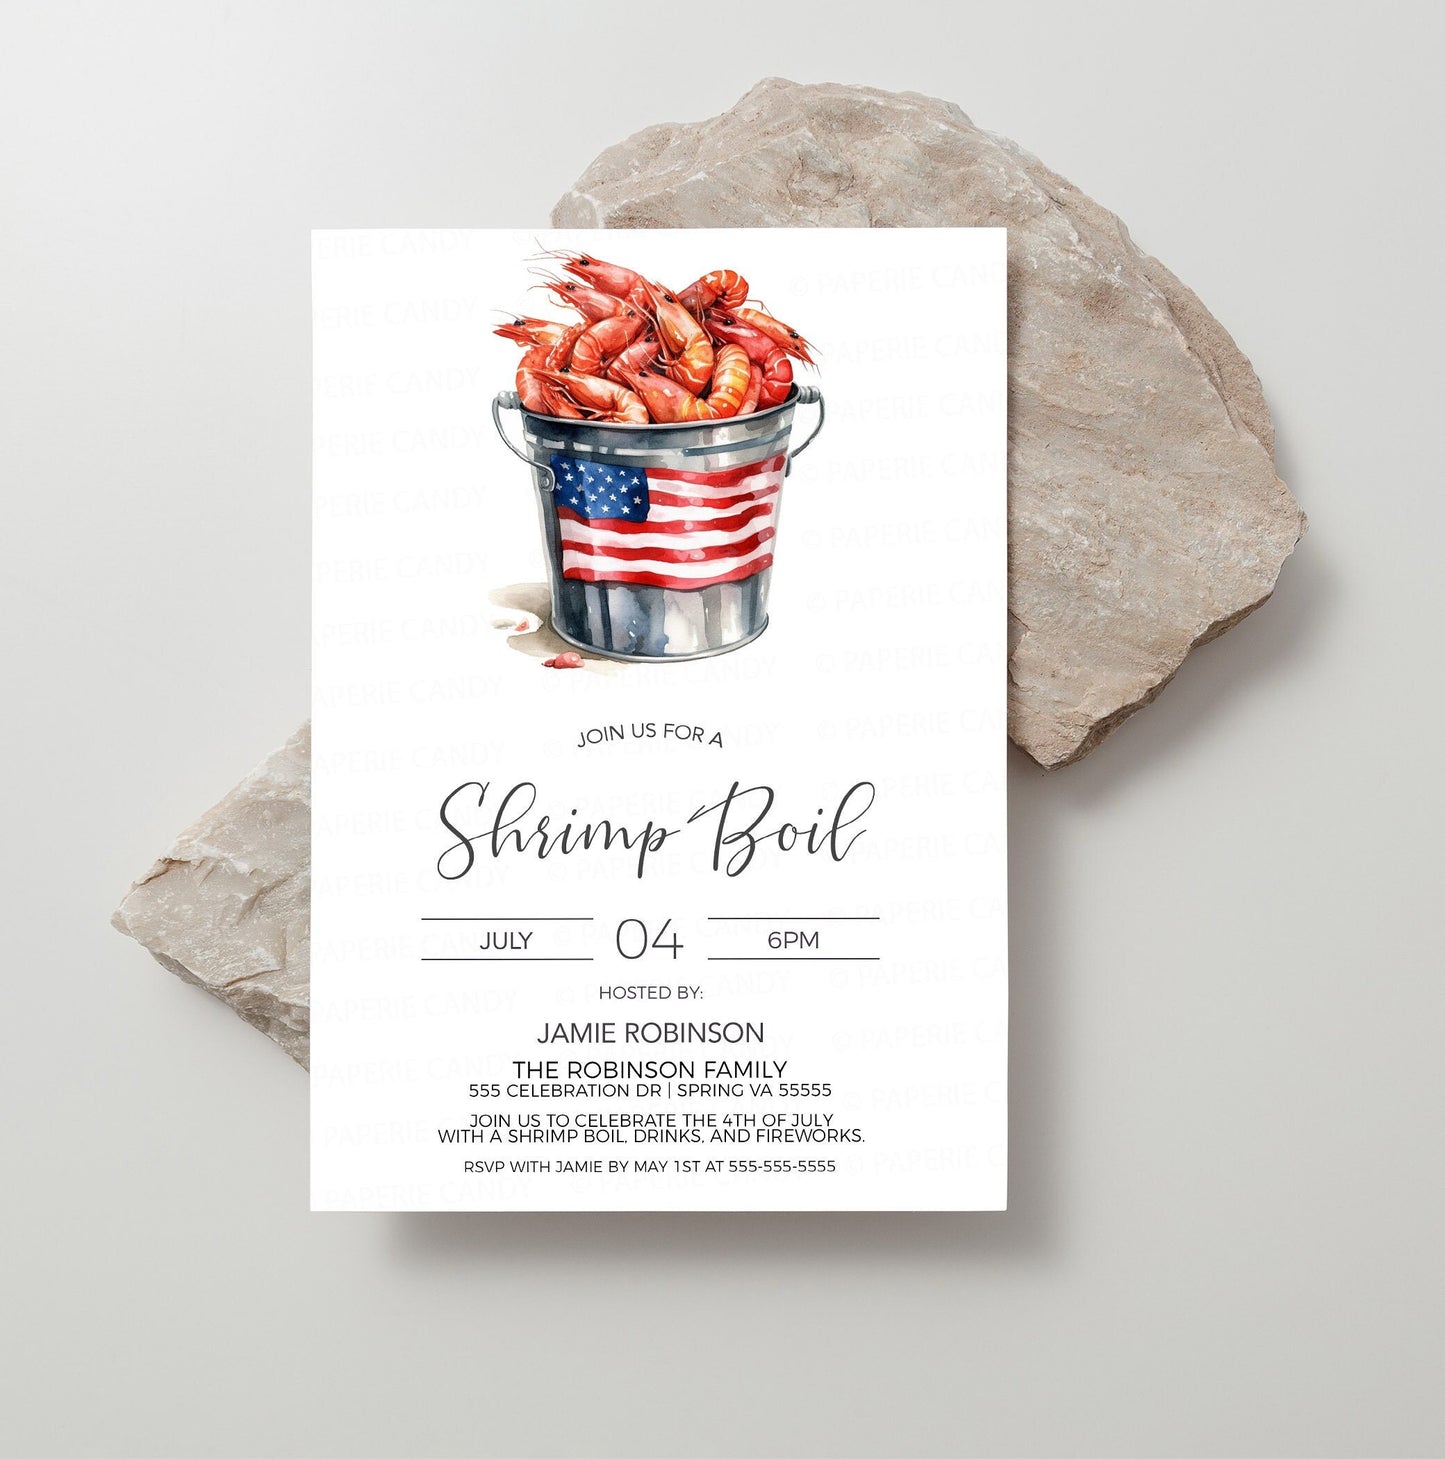 Shrimp Boil Invitation, Patriotic Shrimp Boil Invite, 4th Of July, Labor Day, Memorial Day, Shrimp & Beer Boil, Editable Printable Template